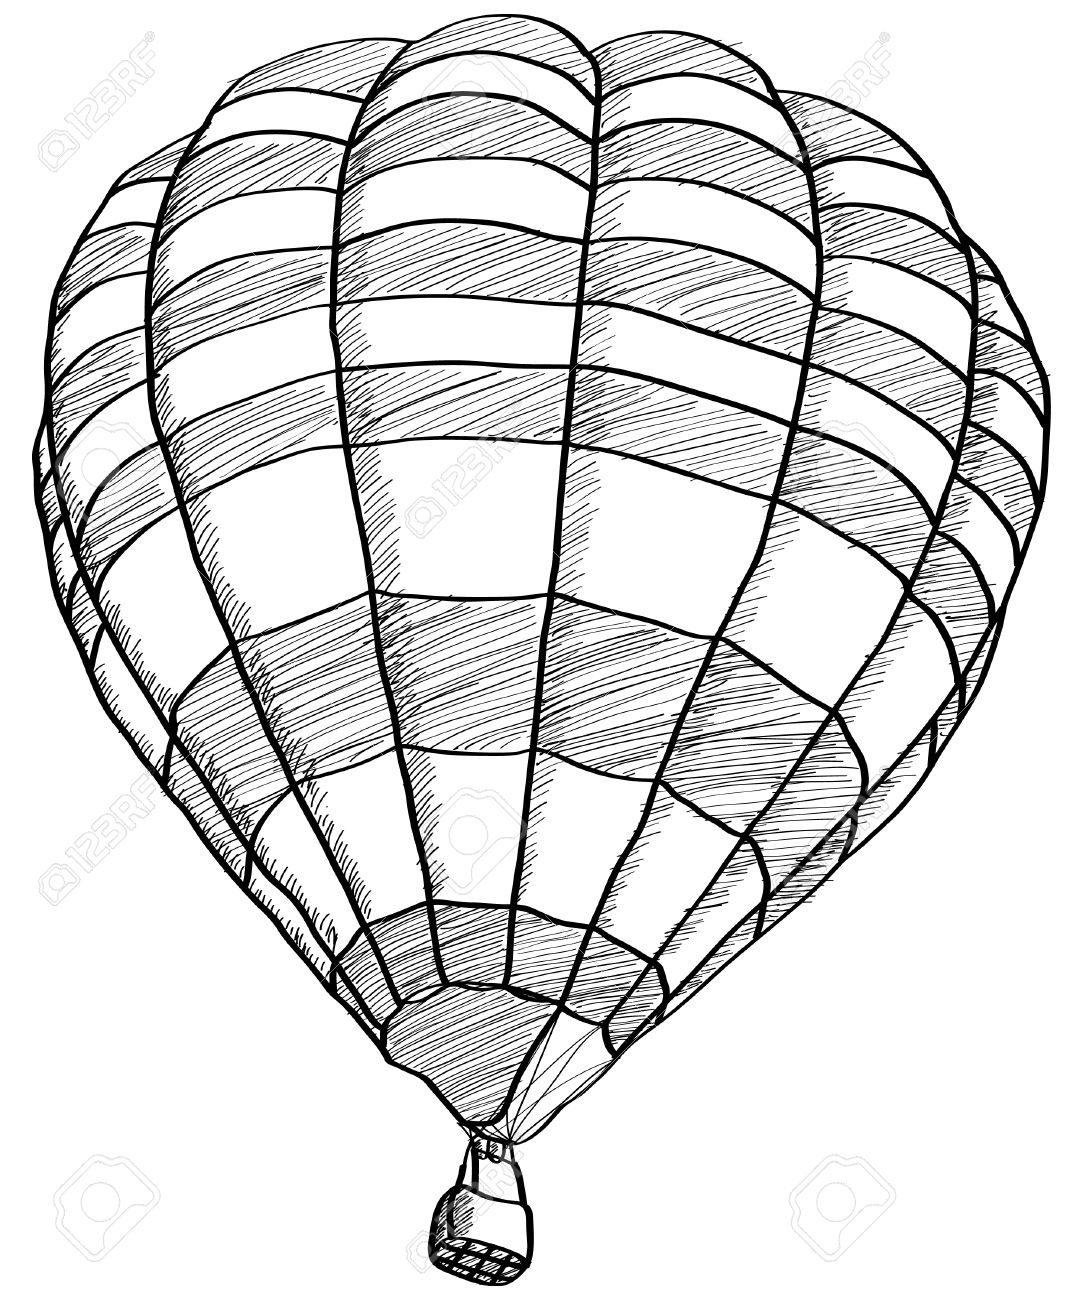 Hot Air Balloon Drawing at GetDrawings Free download